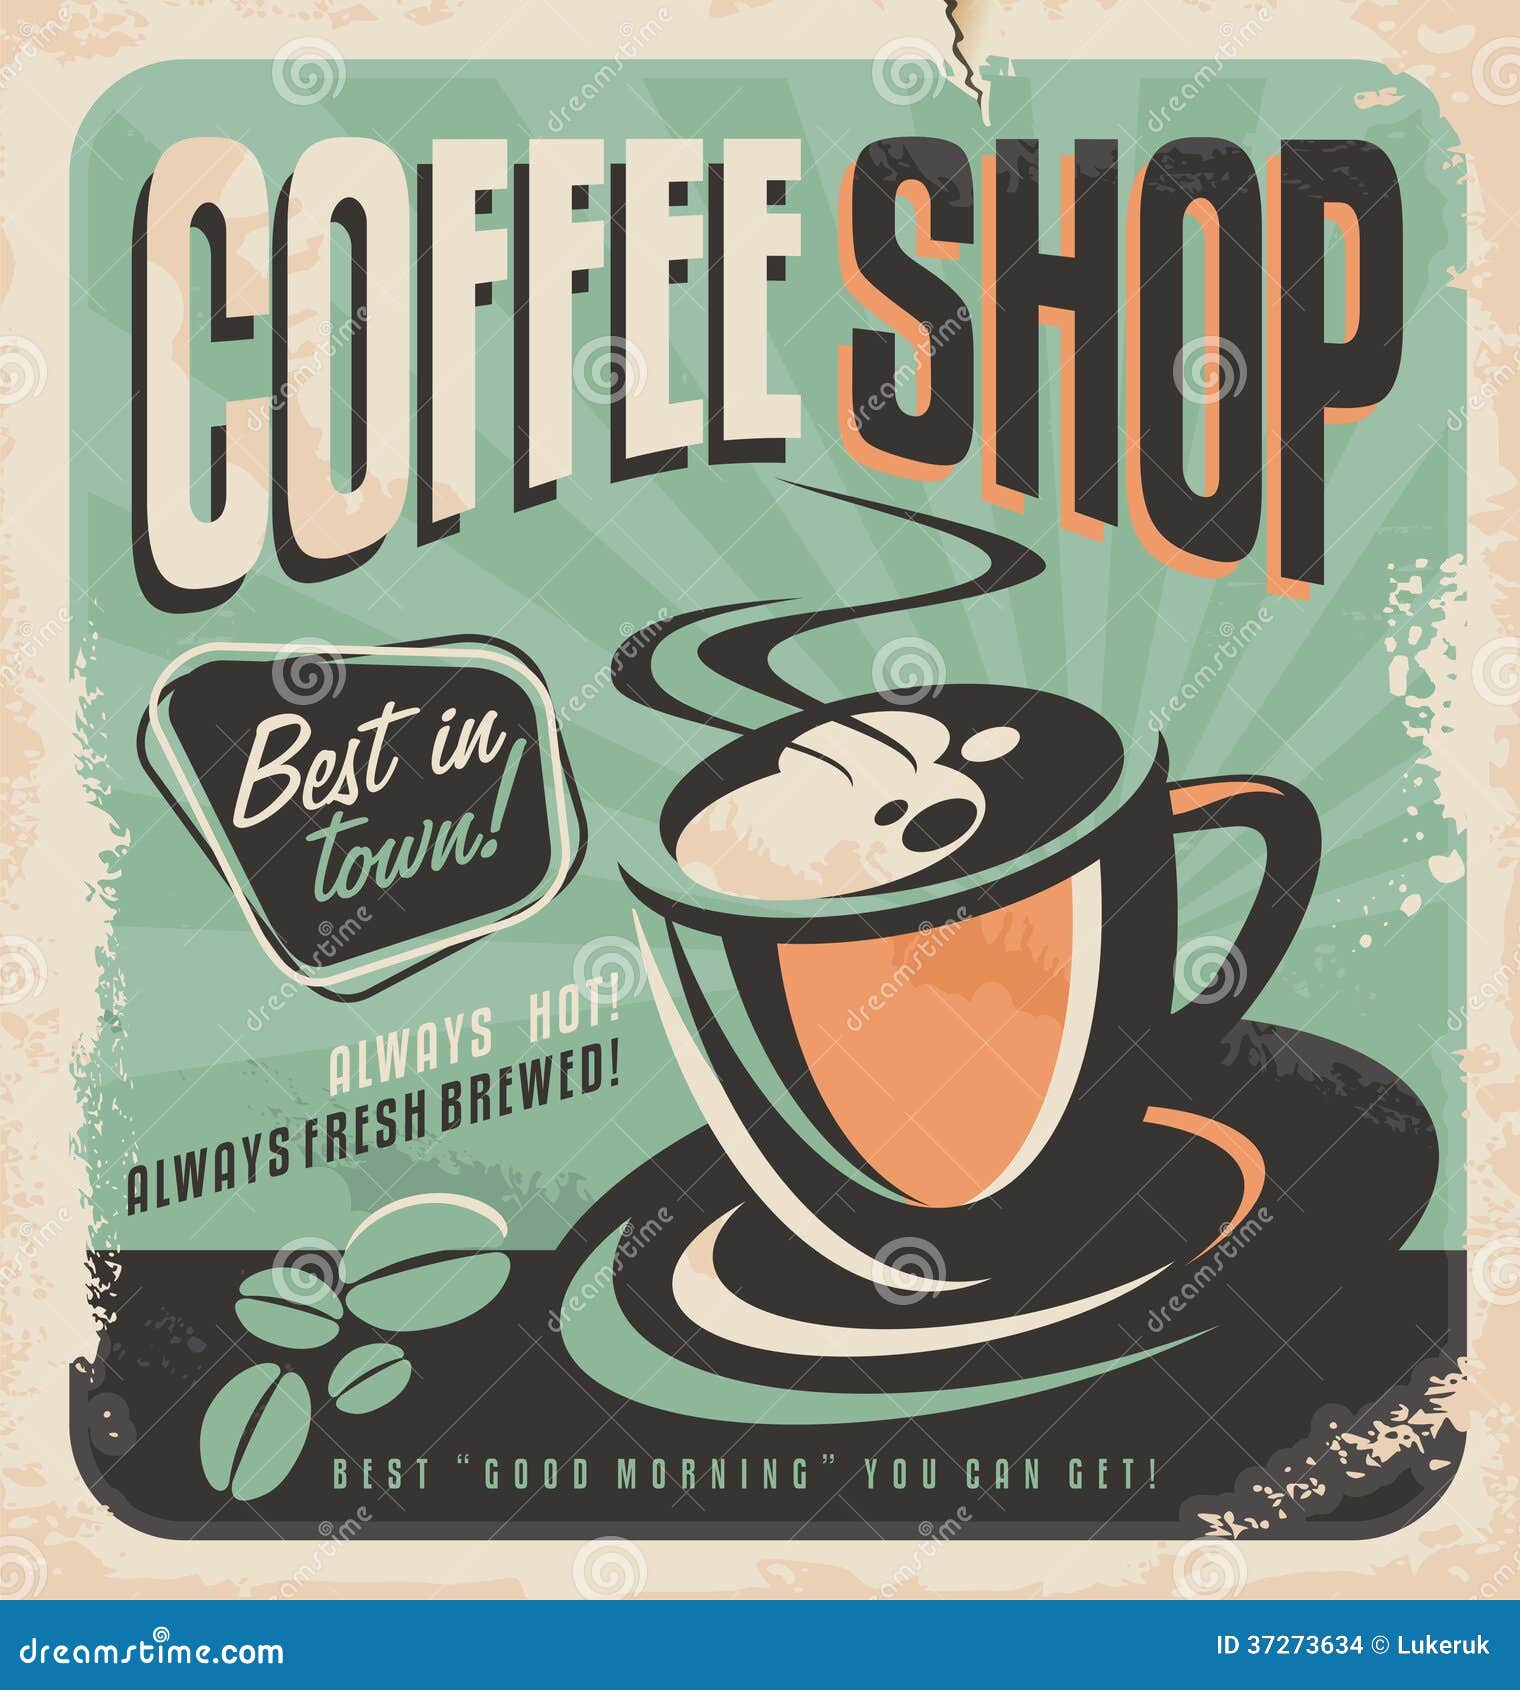 Vintage Coffee Shop Ad